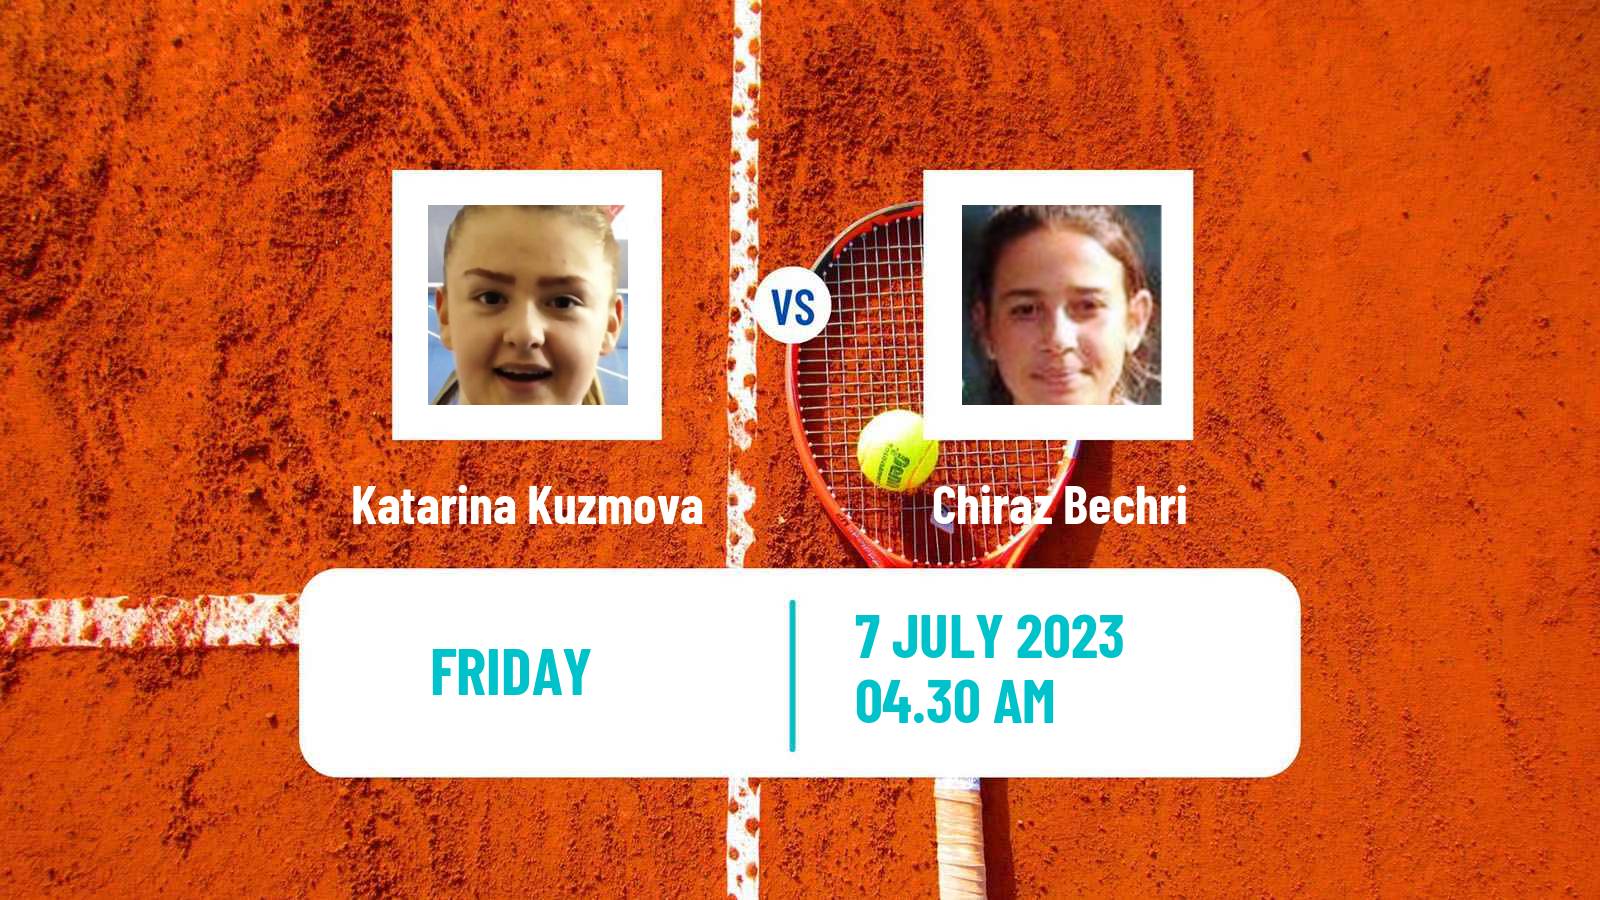 Tennis ITF W15 Monastir 22 Women Katarina Kuzmova - Chiraz Bechri